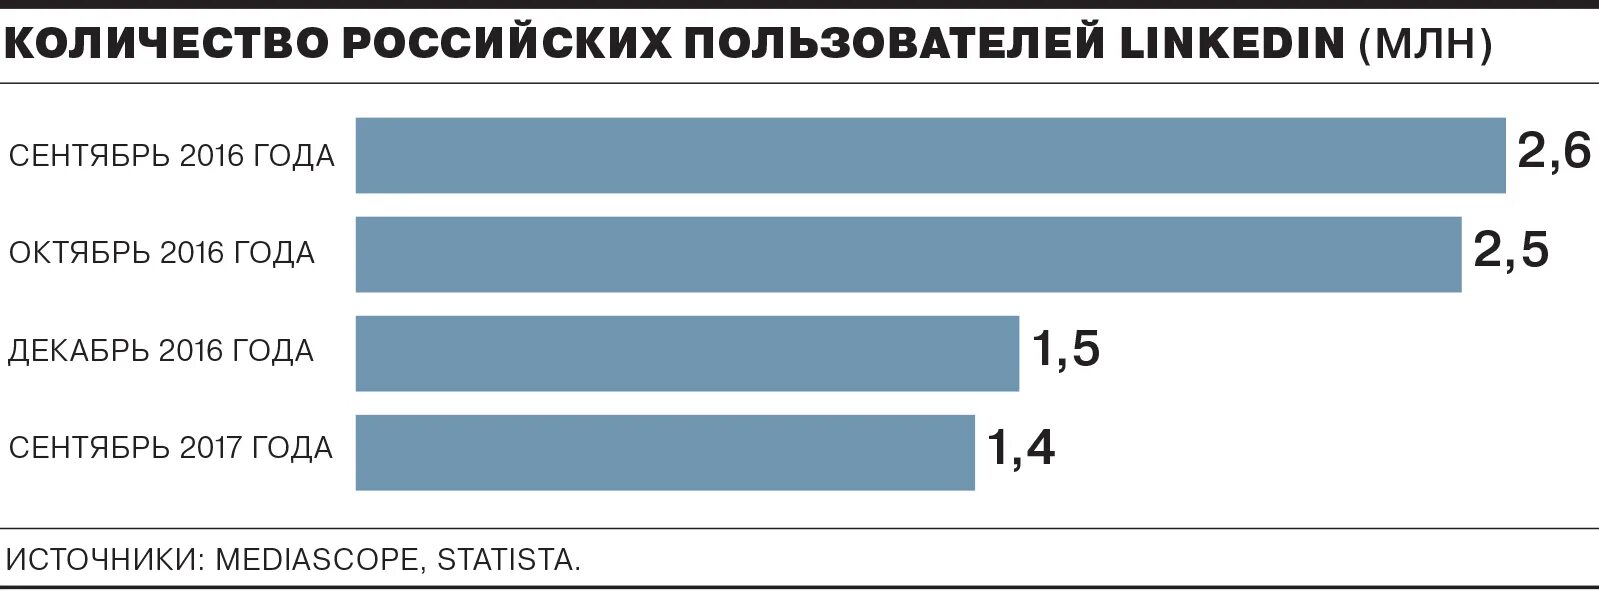 LINKEDIN количество пользователей в России. Количество пользователей LINKEDIN по годам. Число пользователей из России крипты. Линкедин запрещен в России.